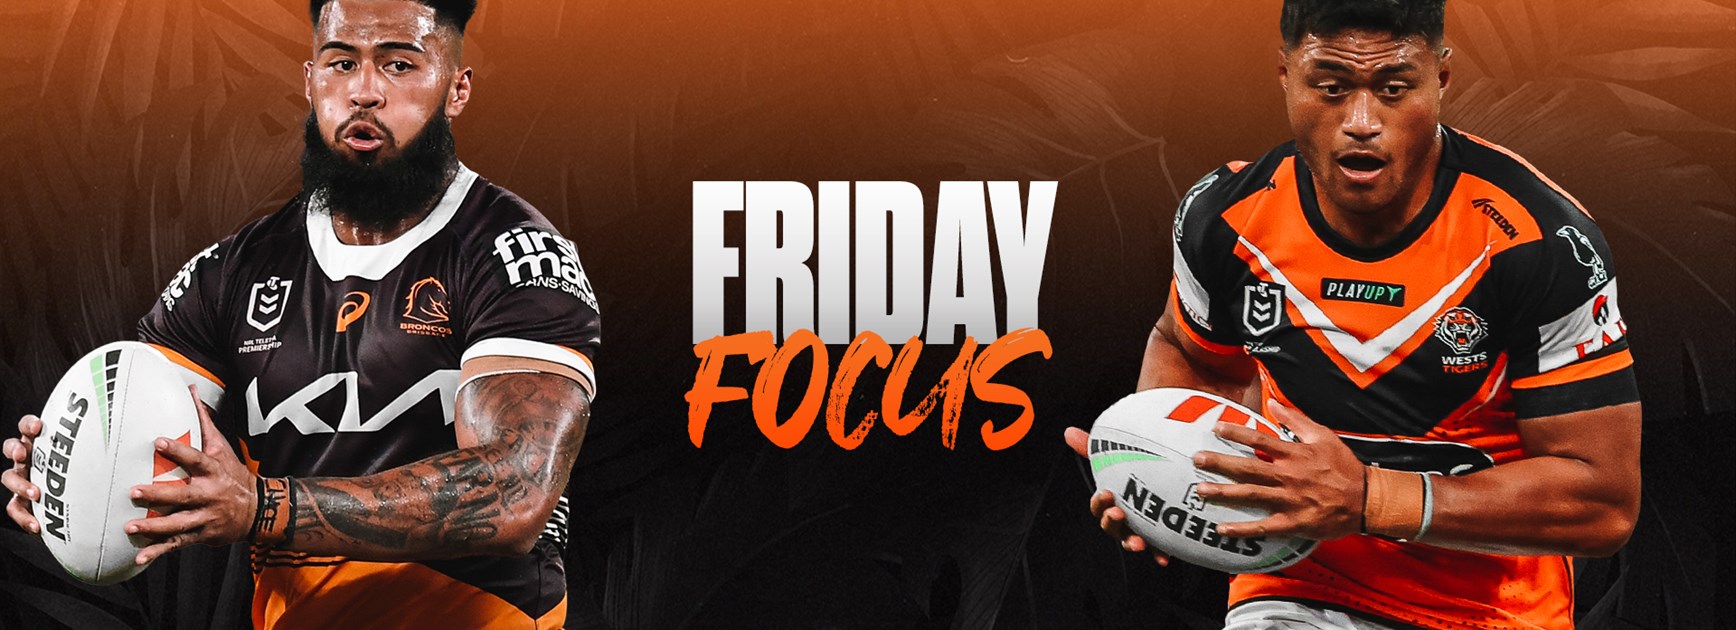 Friday Focus: Round 5 vs Broncos